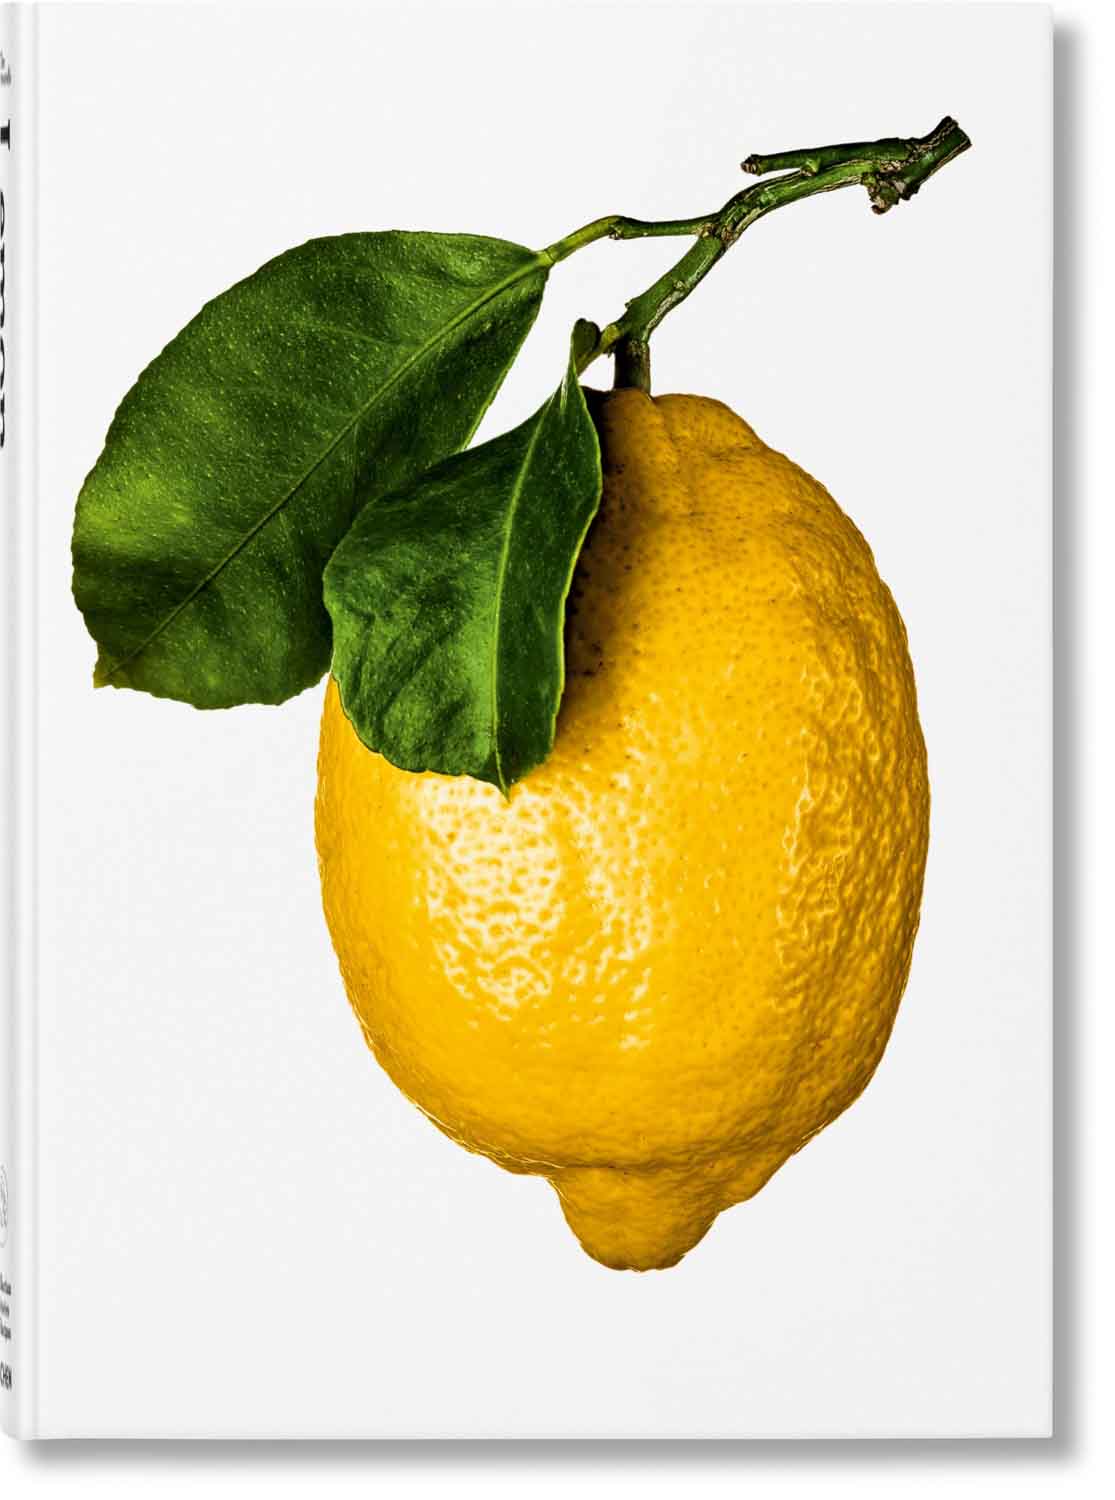 „The Gourmand’s Lemon“, erschienen im Taschen-Verlag. Foto: Taschen